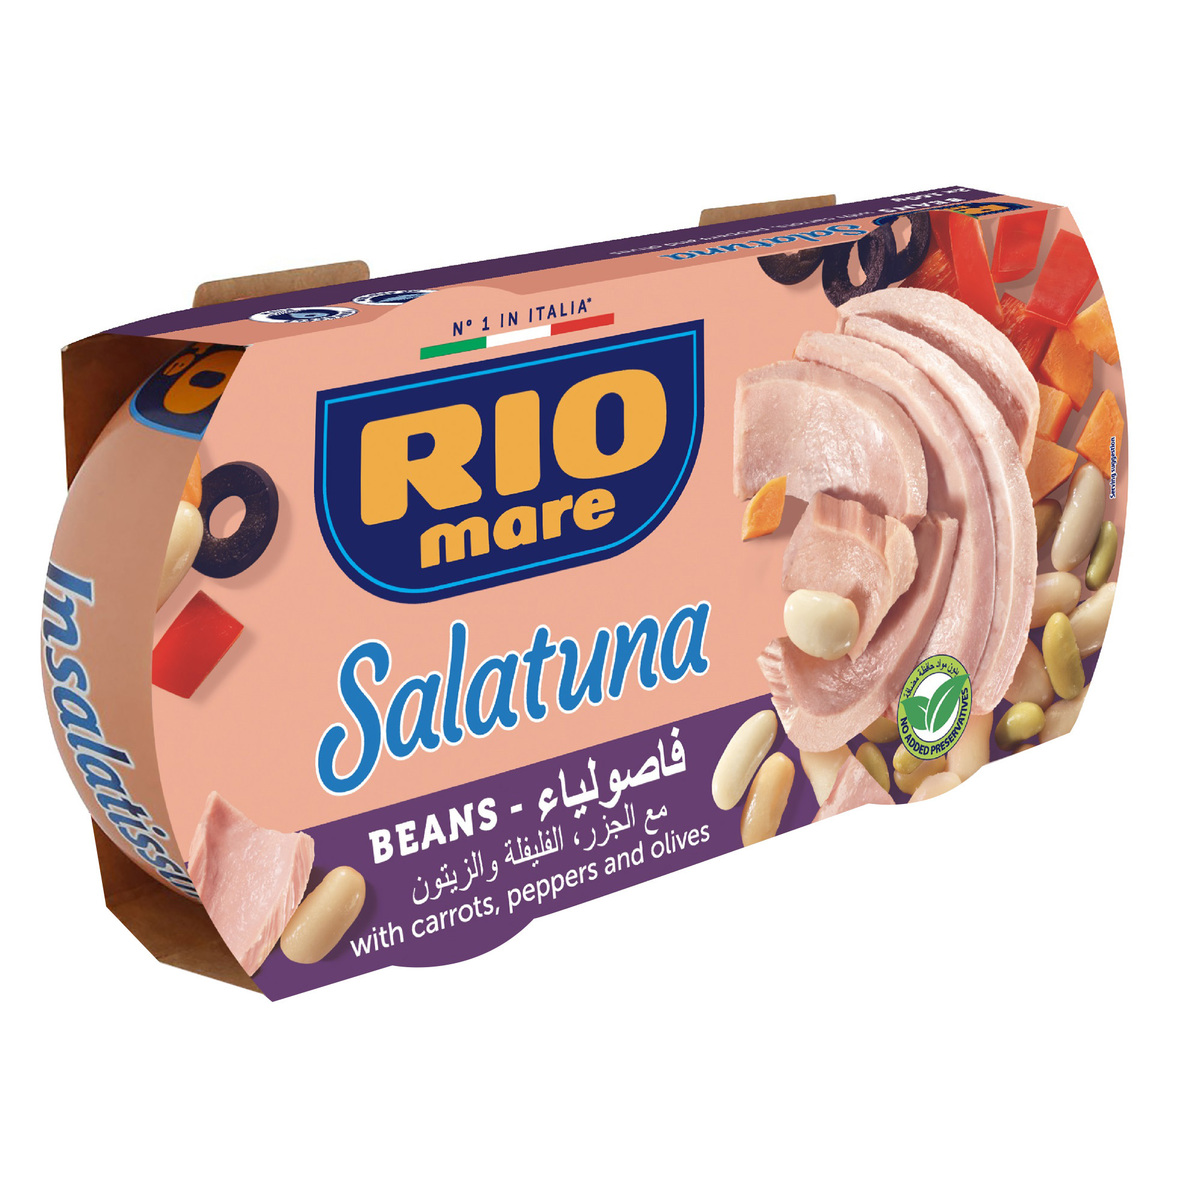 Rio Mare Salatuna Beans Recipe 2 x 160 g